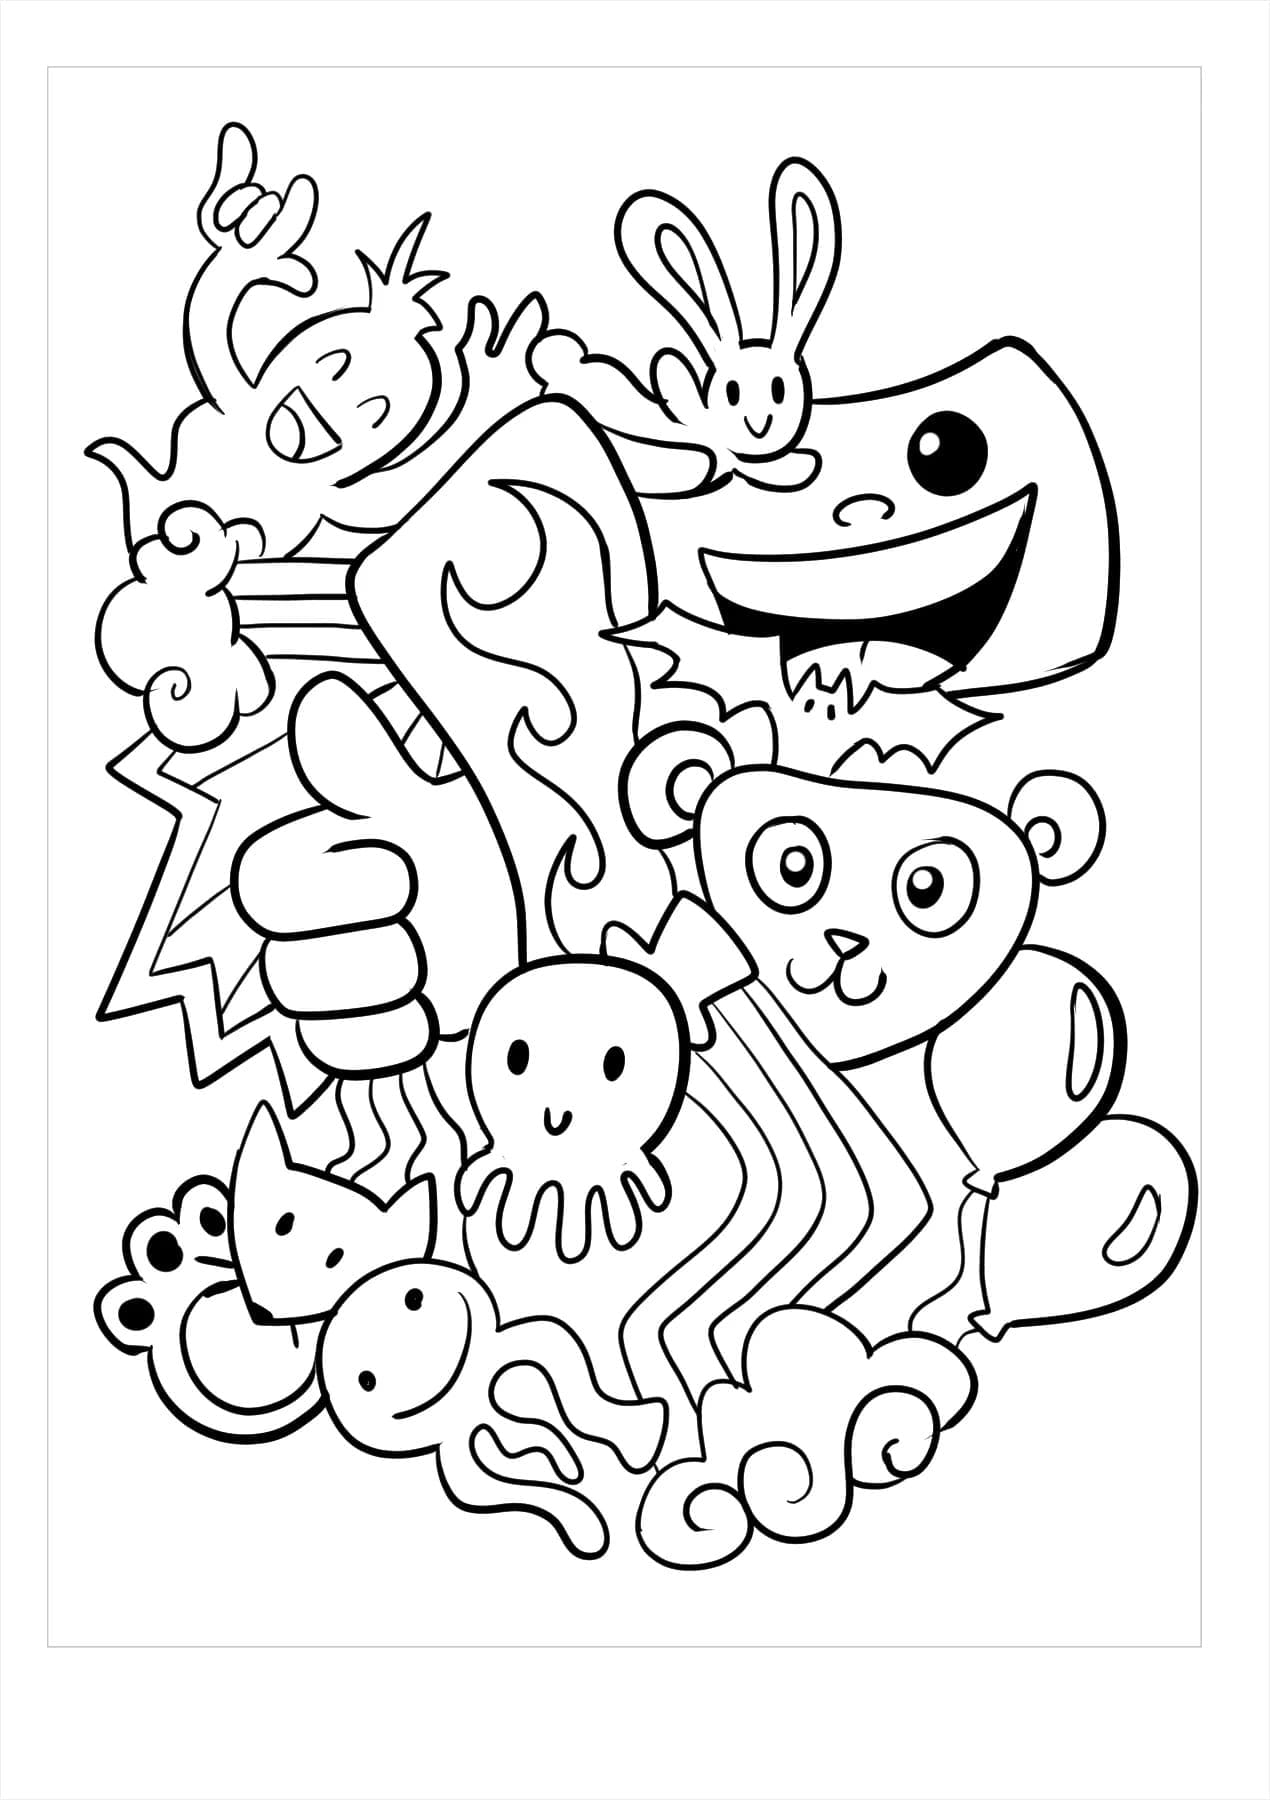 Doodle Art Créatures Mystérieuses coloring page